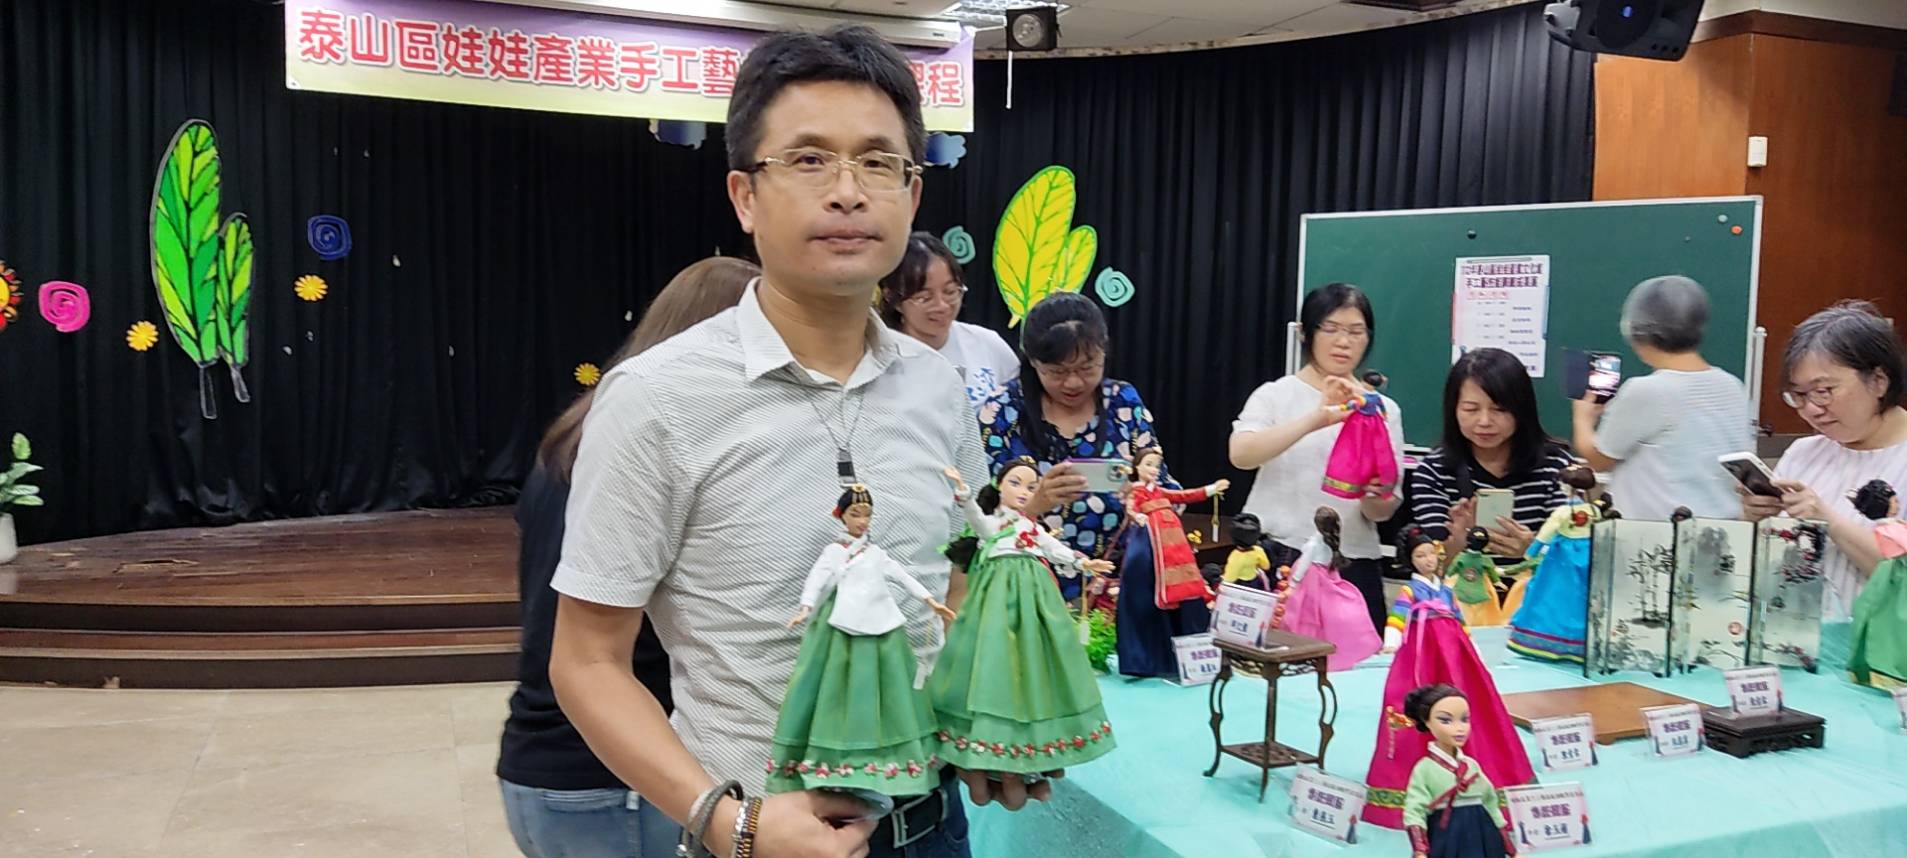 112年泰山區娃娃產業文化館手工藝技能訓練成果展-22